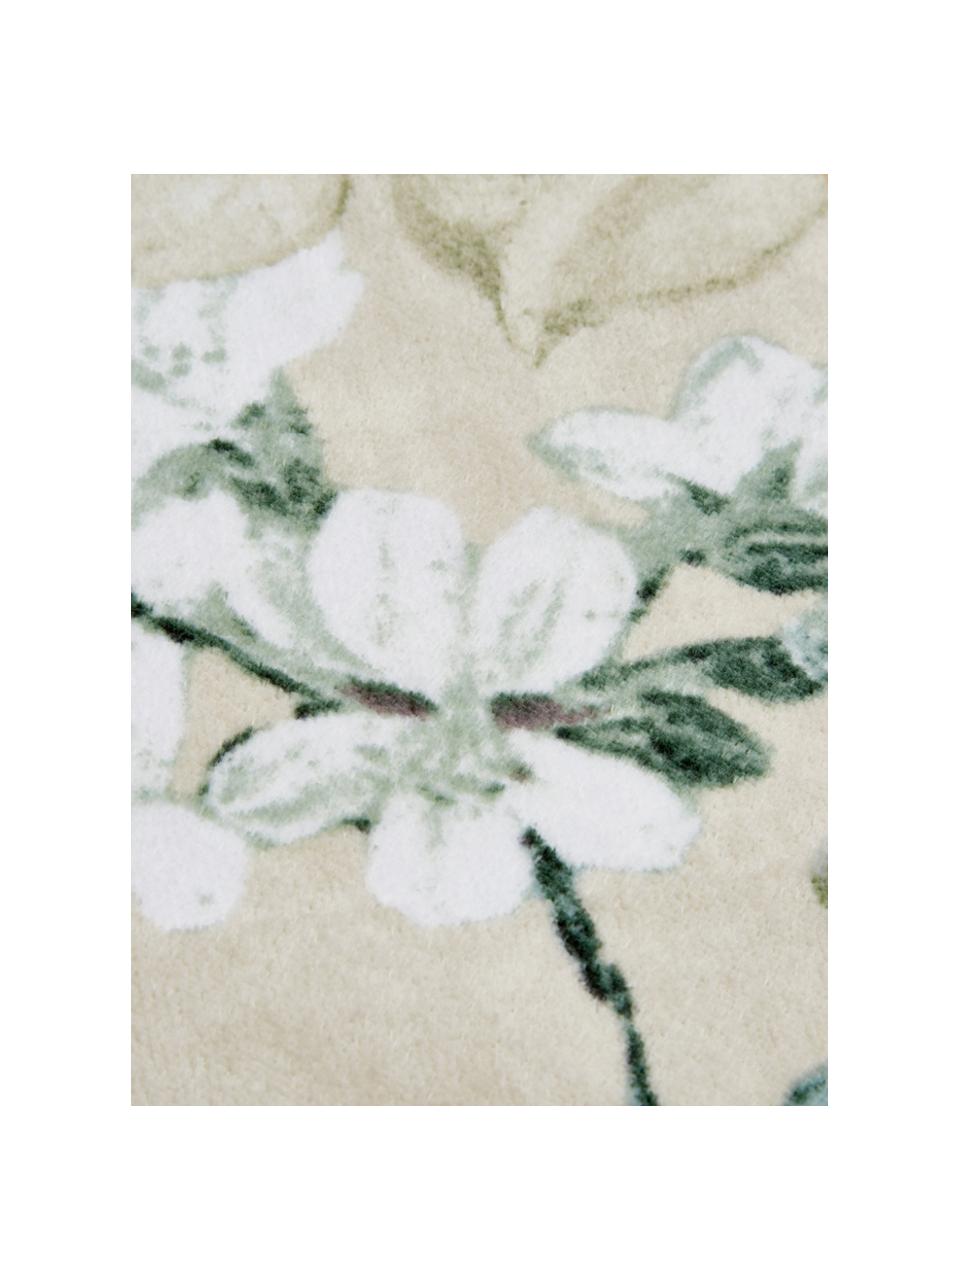 Handtuch Rosalee in verschiedenen Größen, mit Blumen-Muster, 100% Bio-Baumwolle, GOTS-zertifiziert, Beige, gemustert, Duschtuch, B 70 x L 140 cm